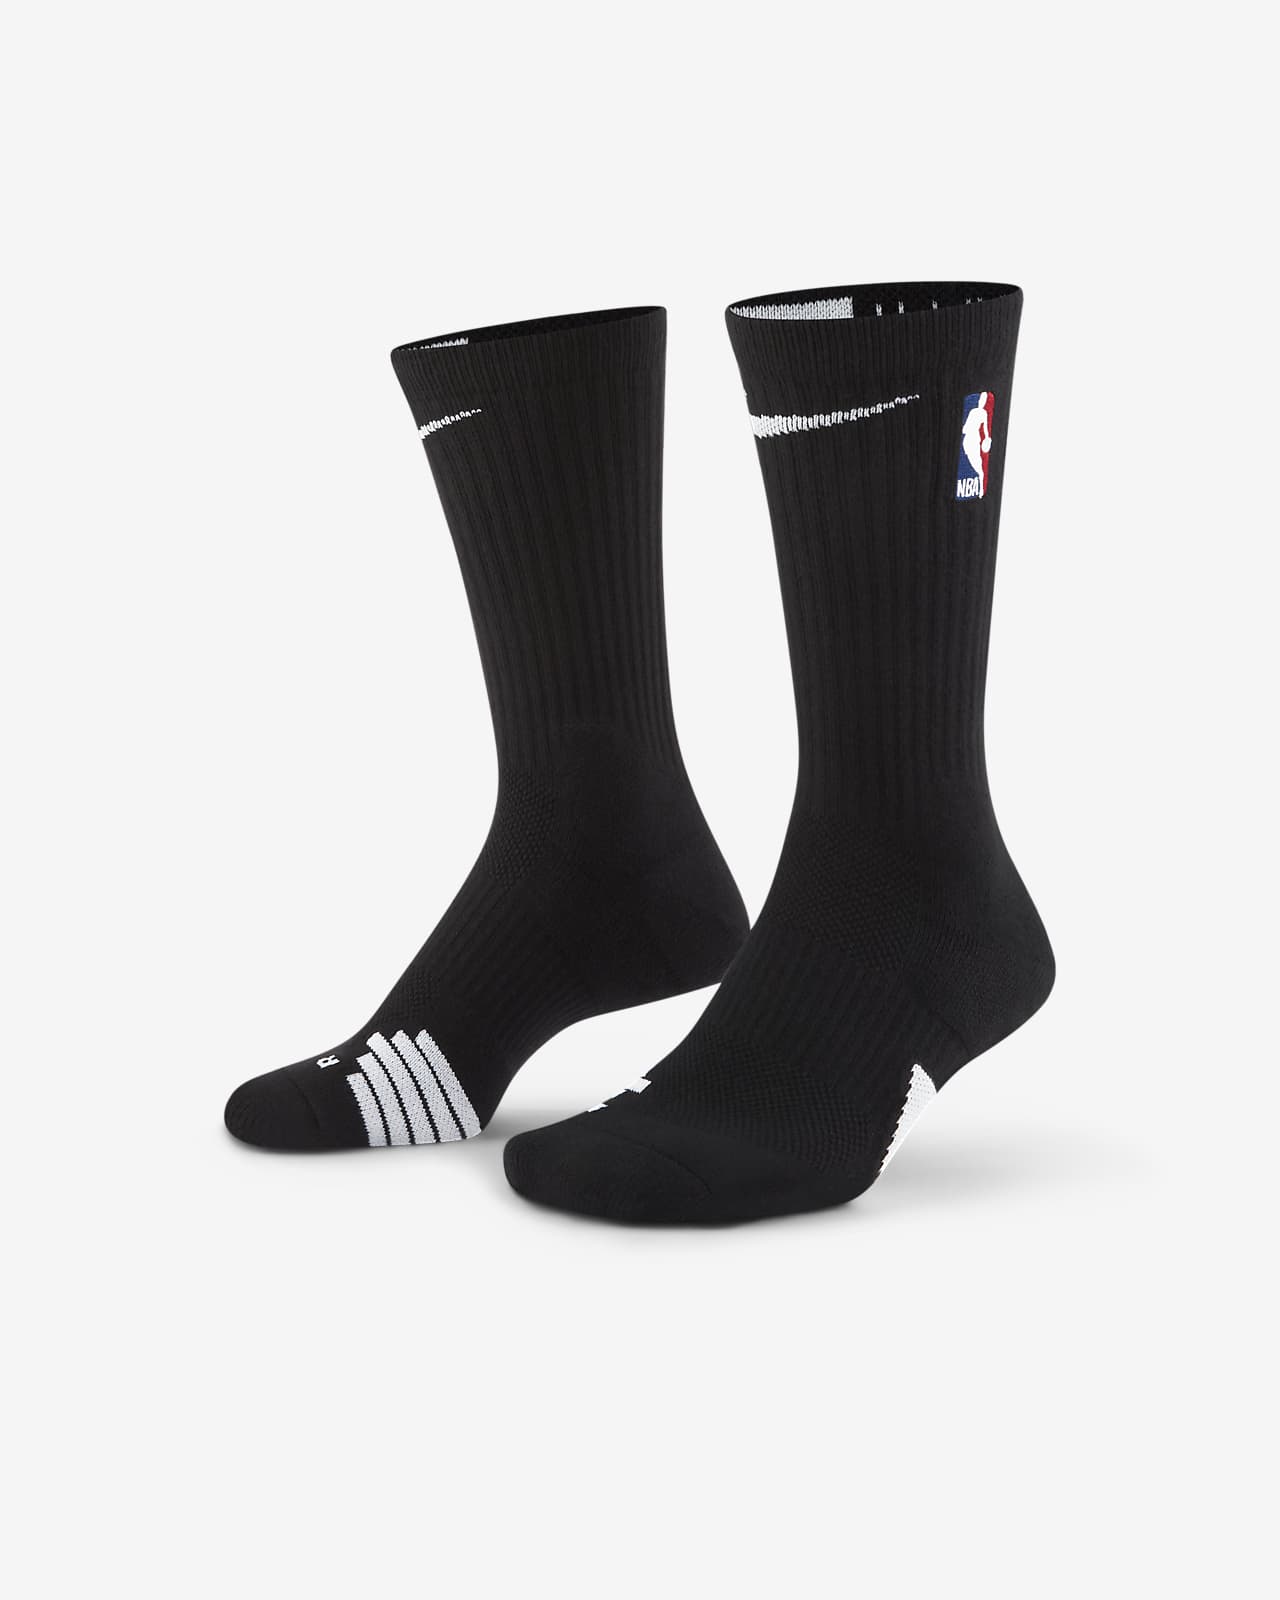 Nike NBA Elite Socks - Full and Mid - Brooklyn Nets Coogi Black and White